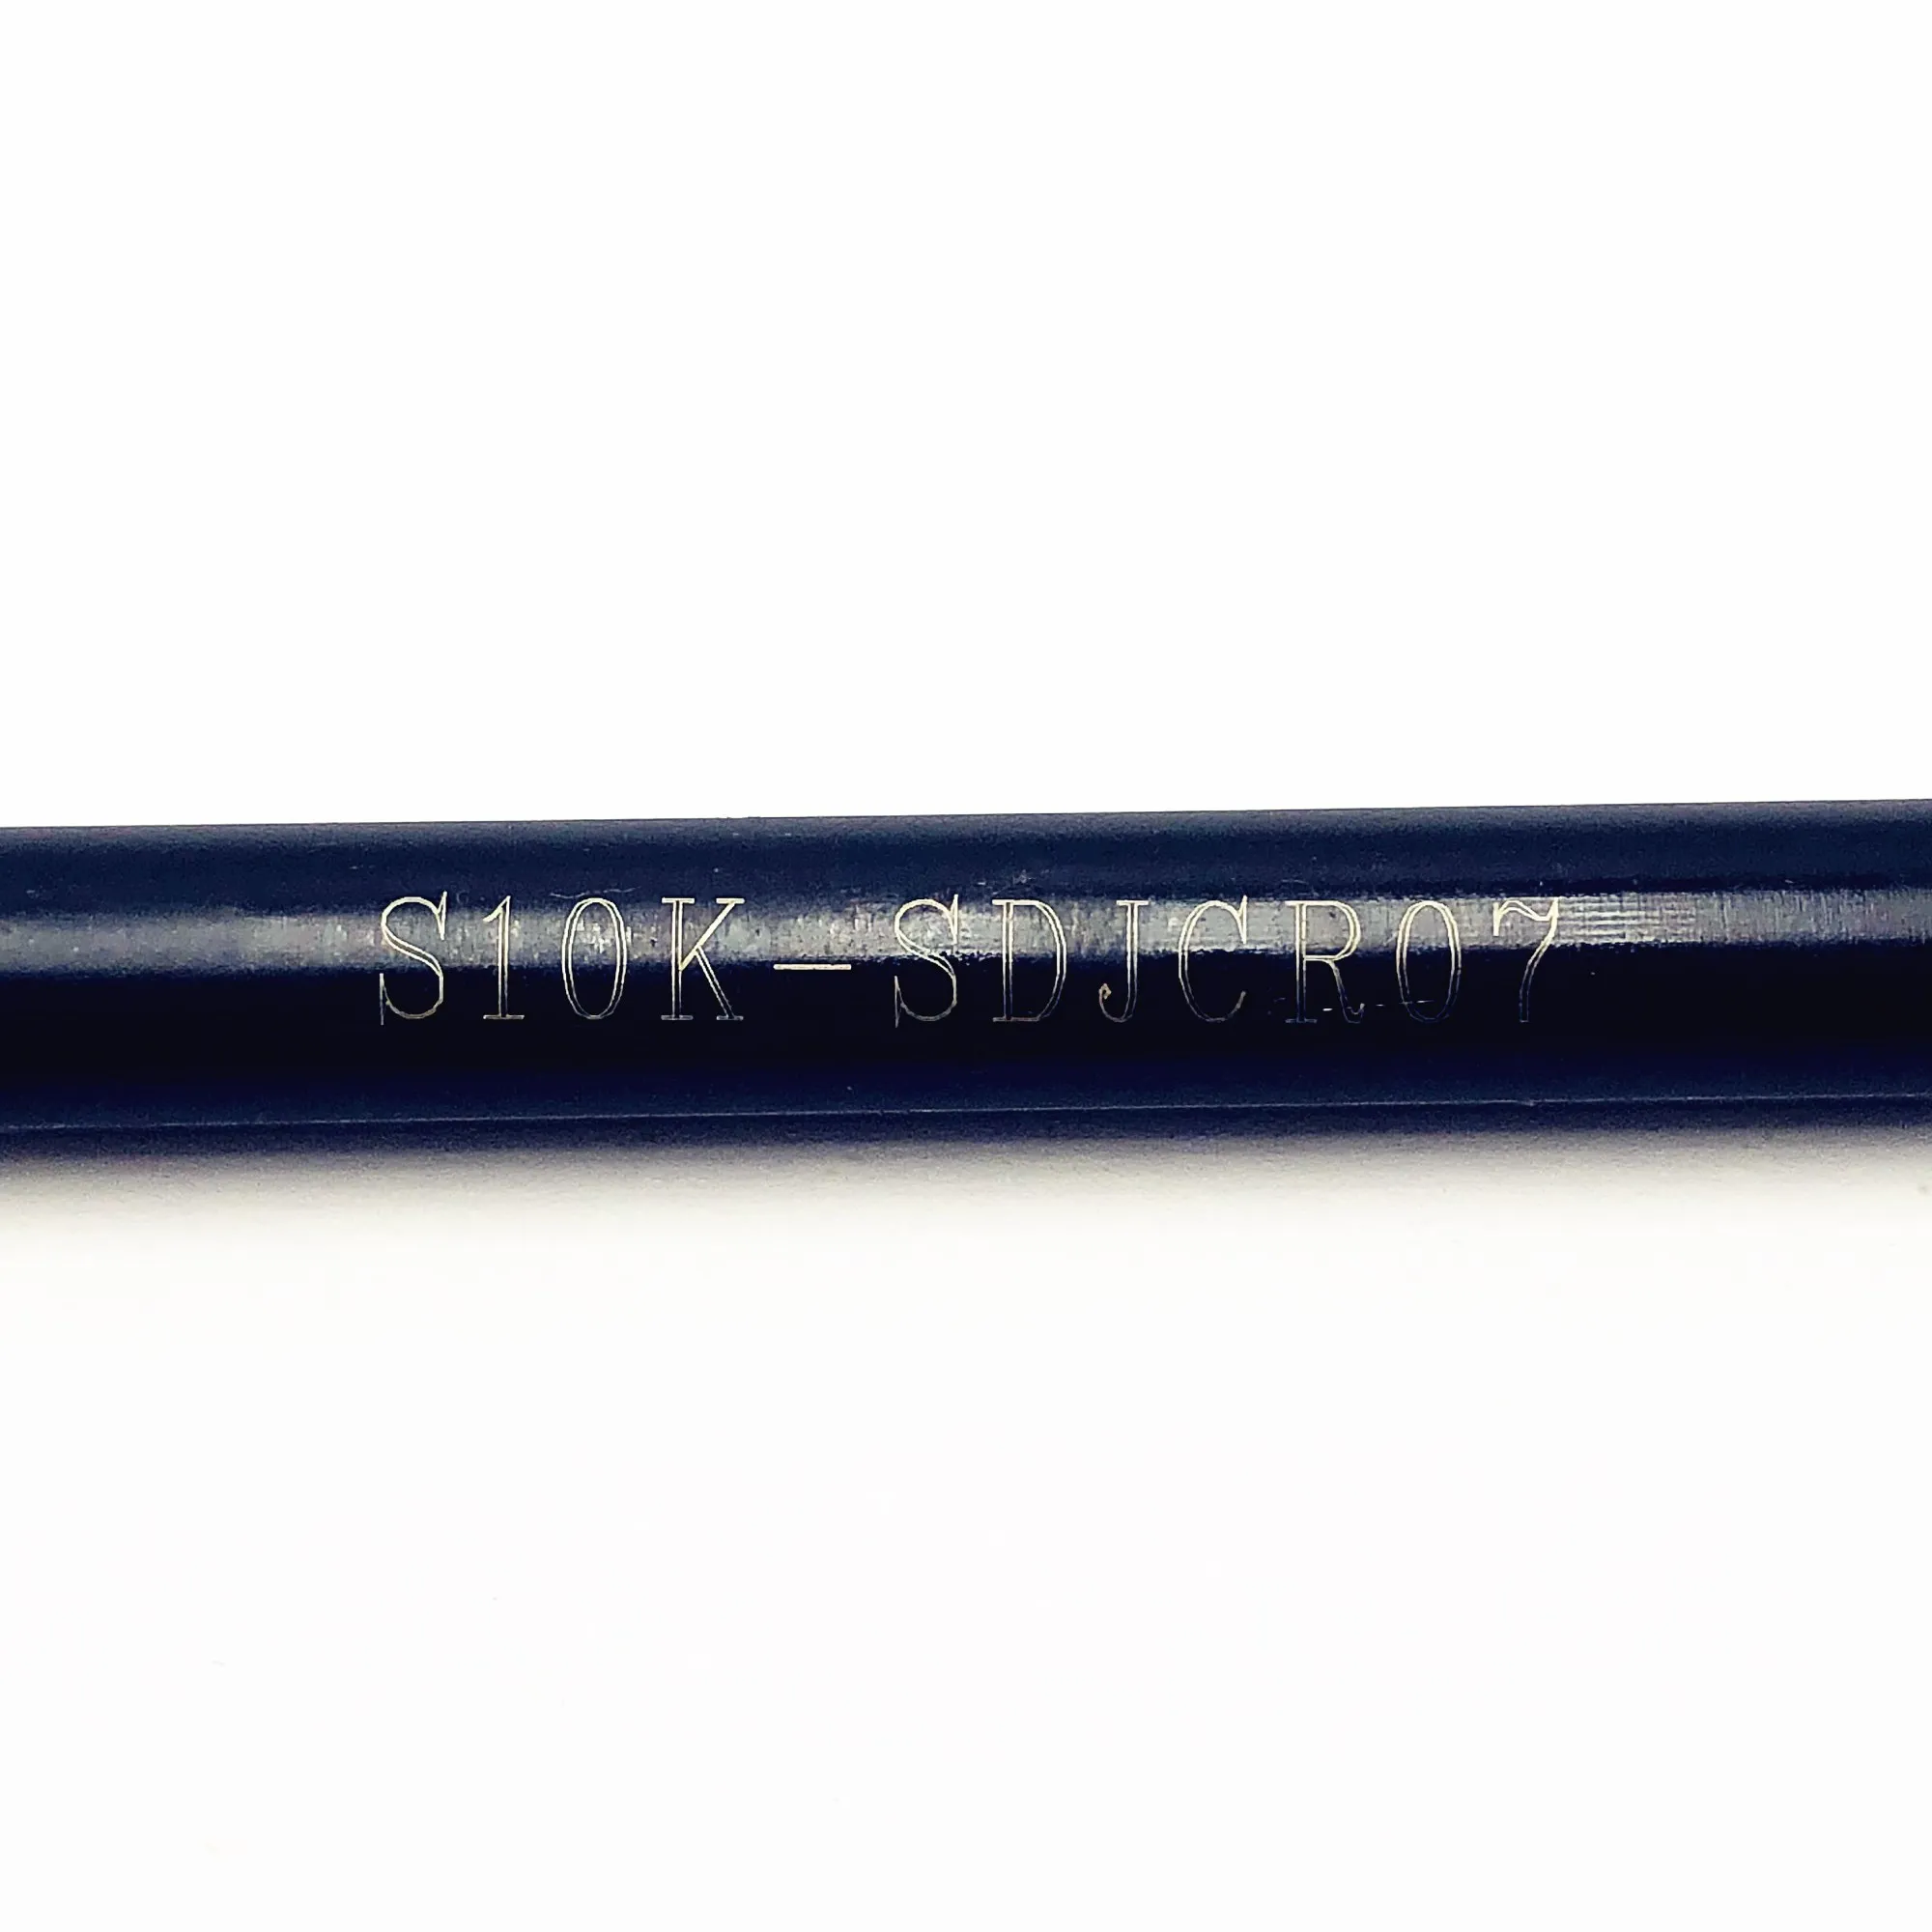 1 шт. металлический держатель инструмента S08K-SDJCR07 S10K-SDJCR07 S12M-SDJCR07 S16Q-SDJCR07 внутренний держатель инструмента для DCMT070204/08 режущего инструмента